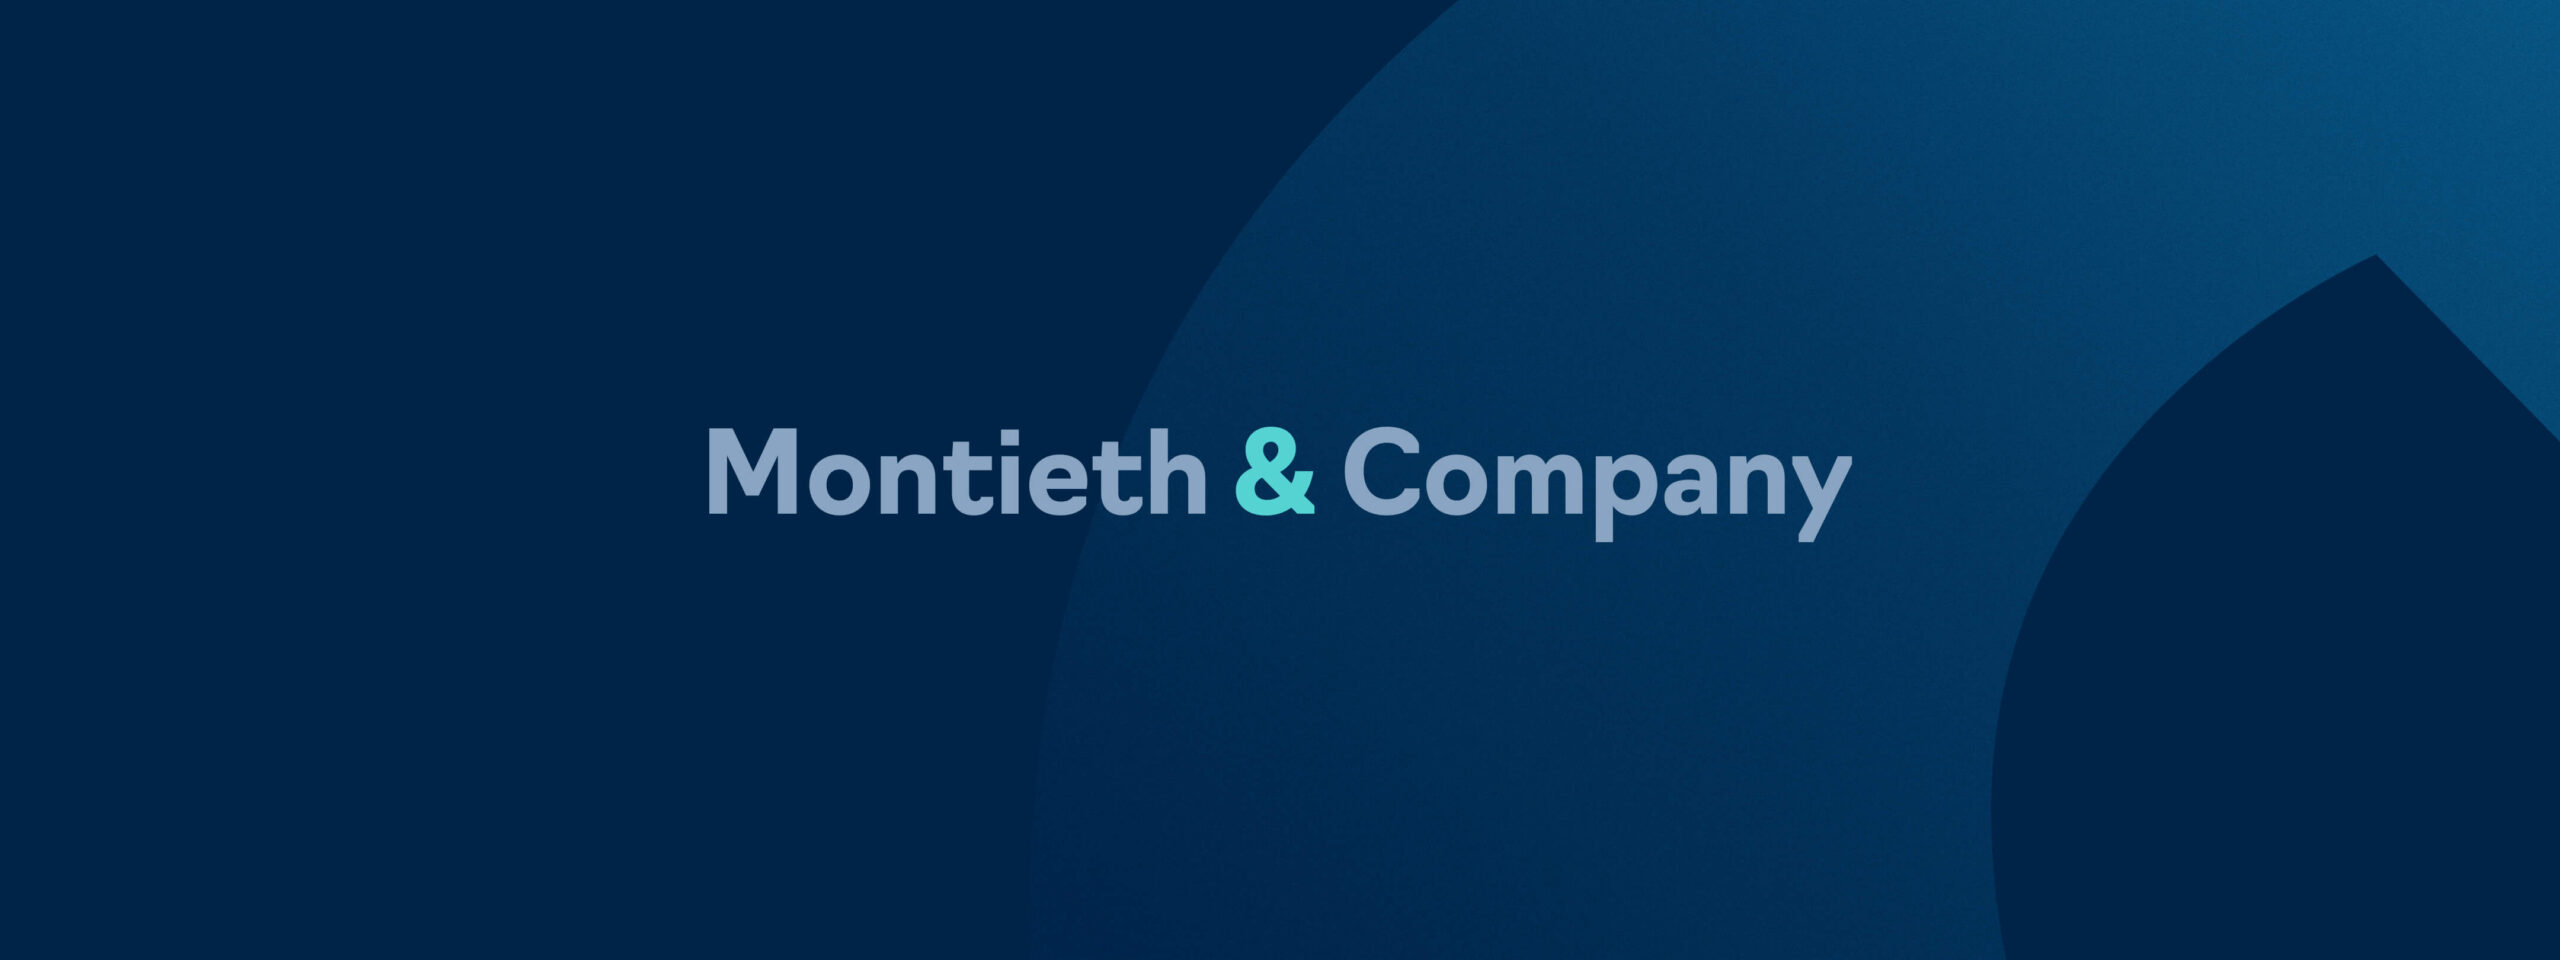 Montieth & Company Hero Image